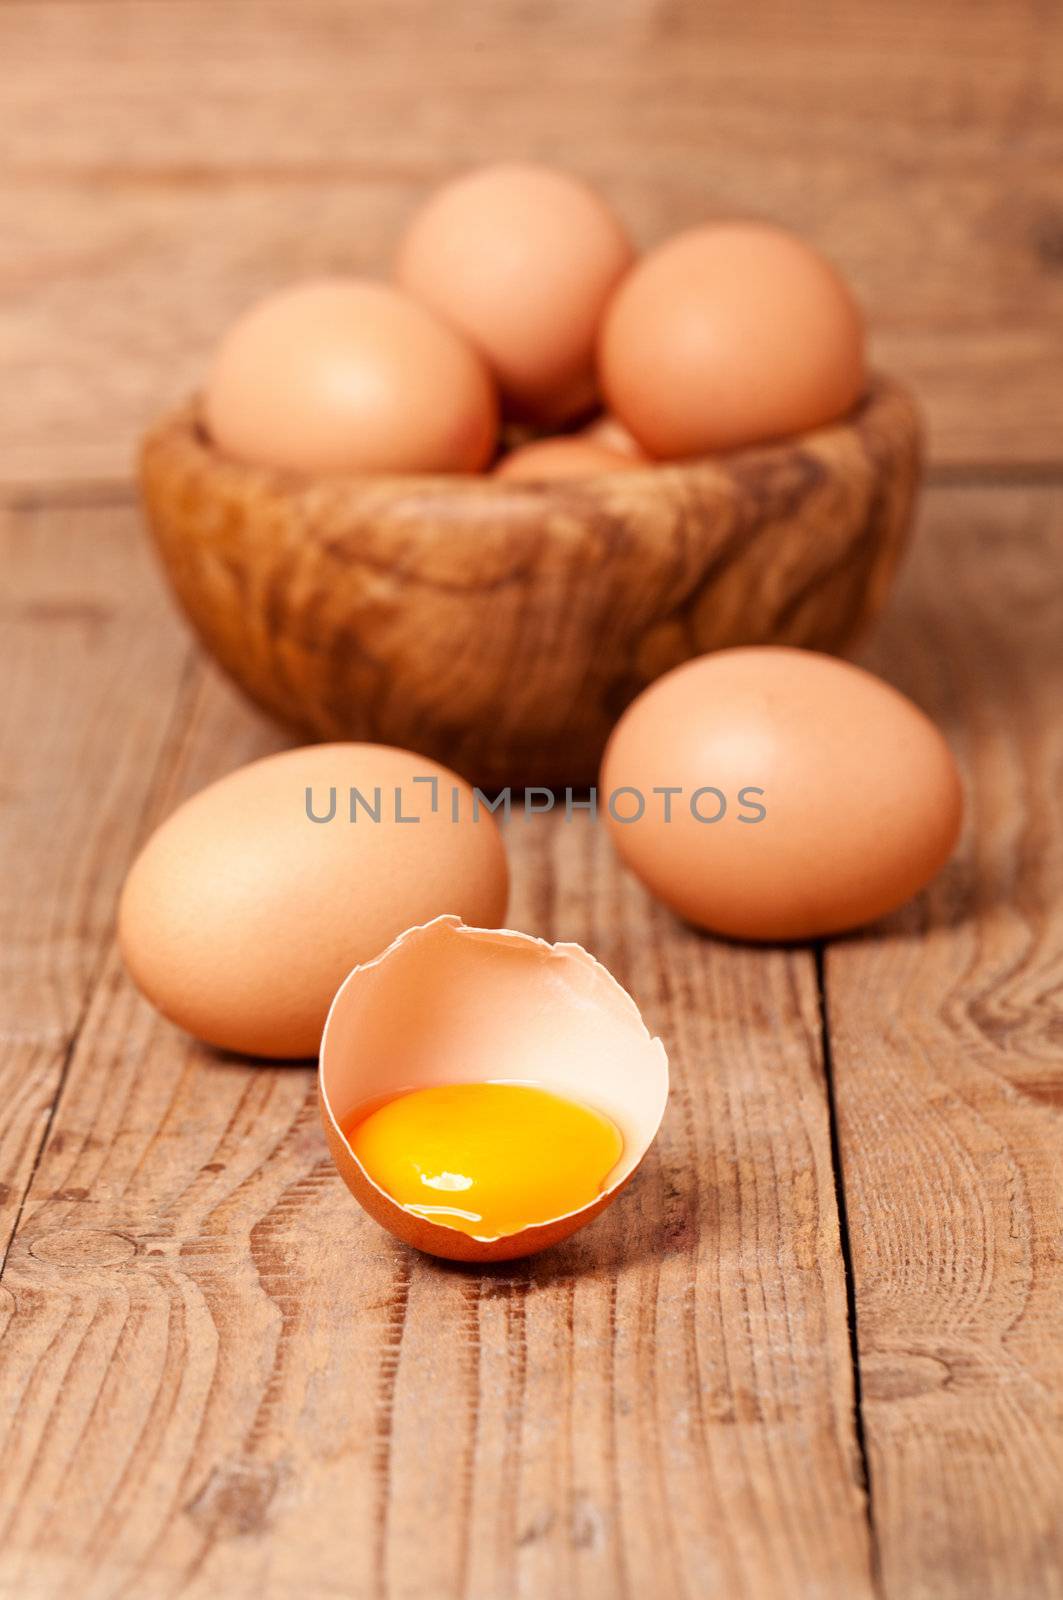 yolk of egg on wooden background by motorolka